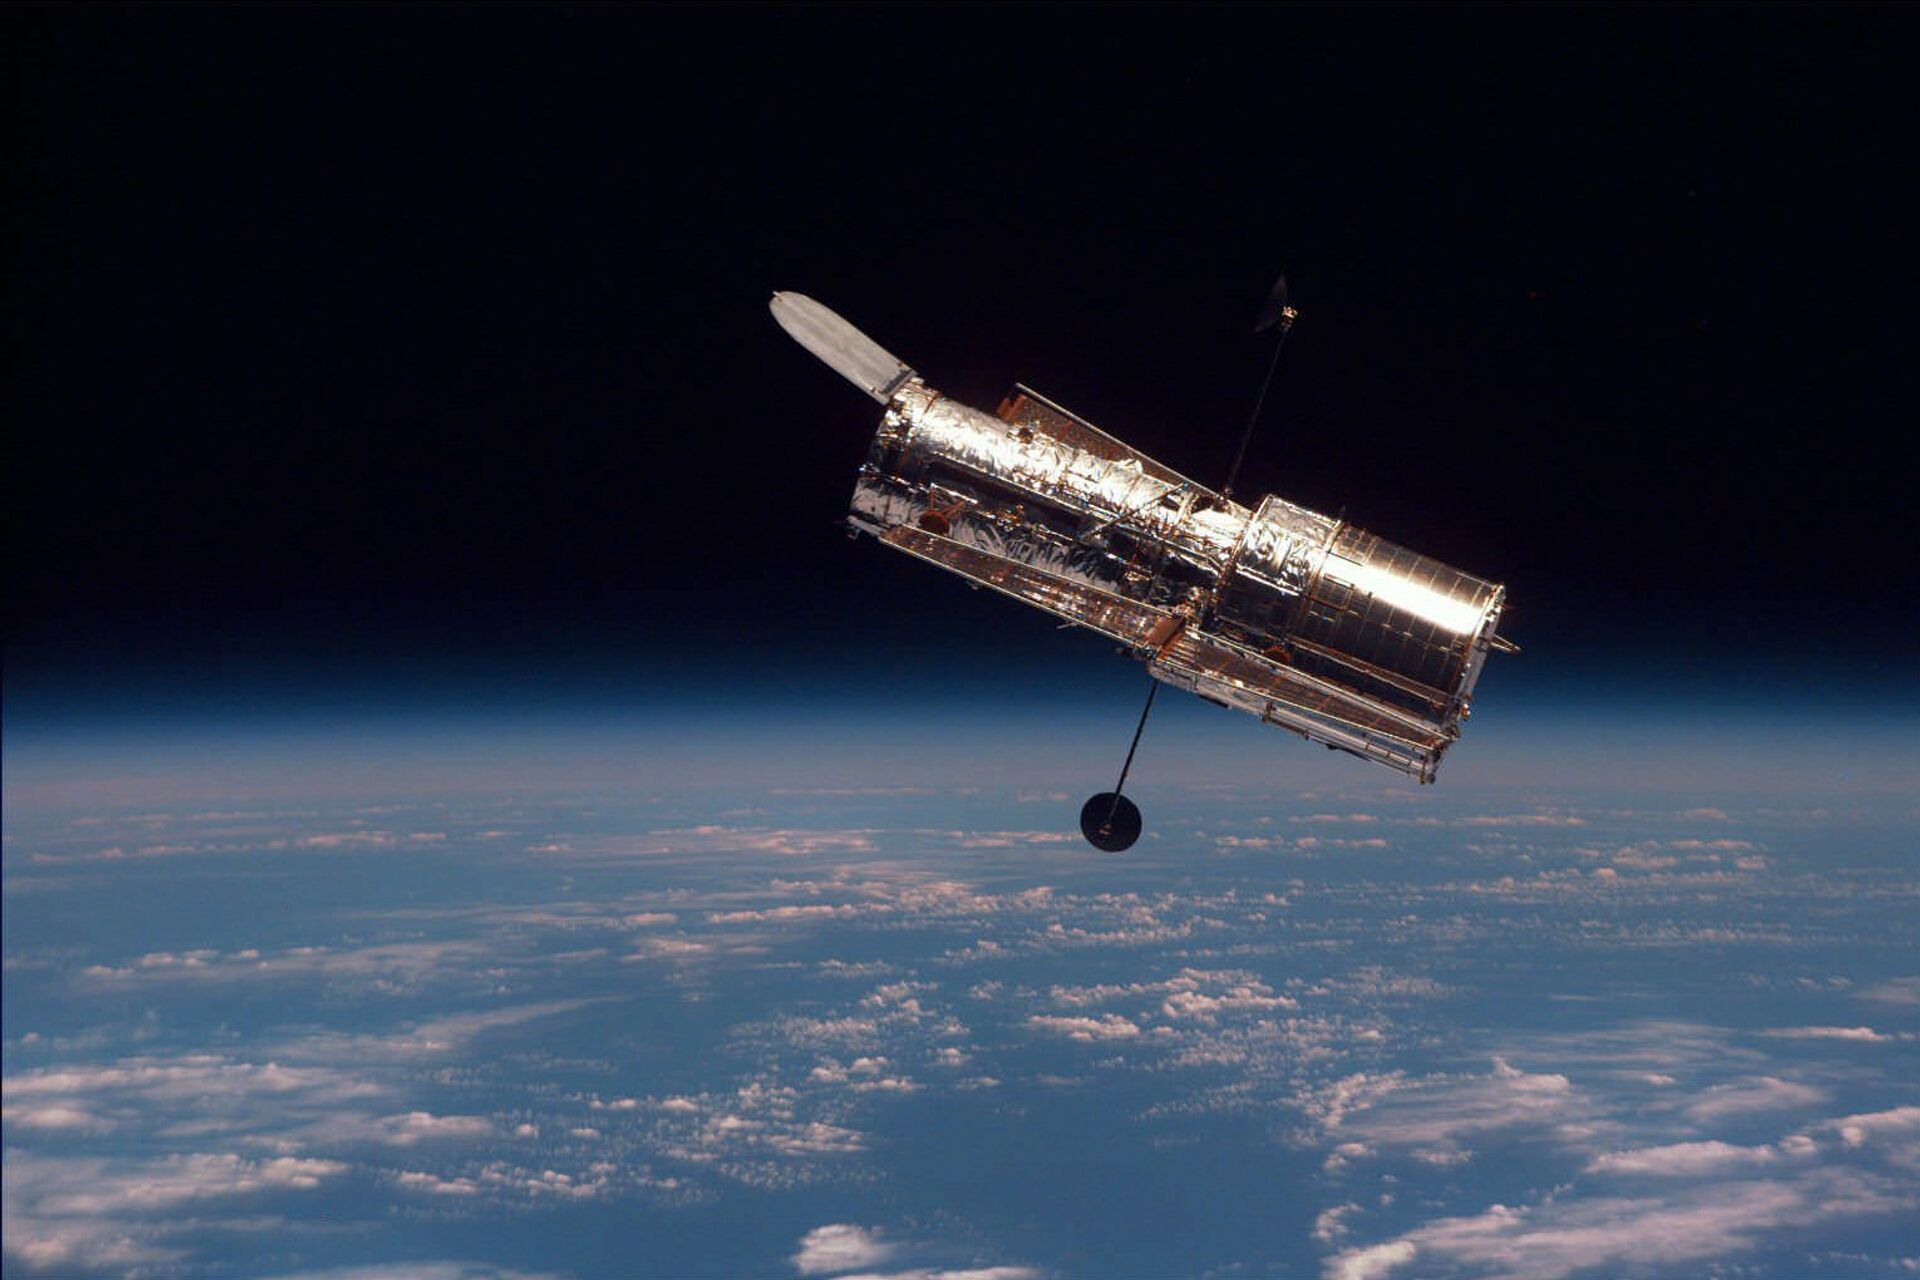 Após mais de 1 mês parado, Hubble retoma observações e envia novas imagens (FOTOS, VÍDEO) - Sputnik Brasil, 1920, 20.07.2021